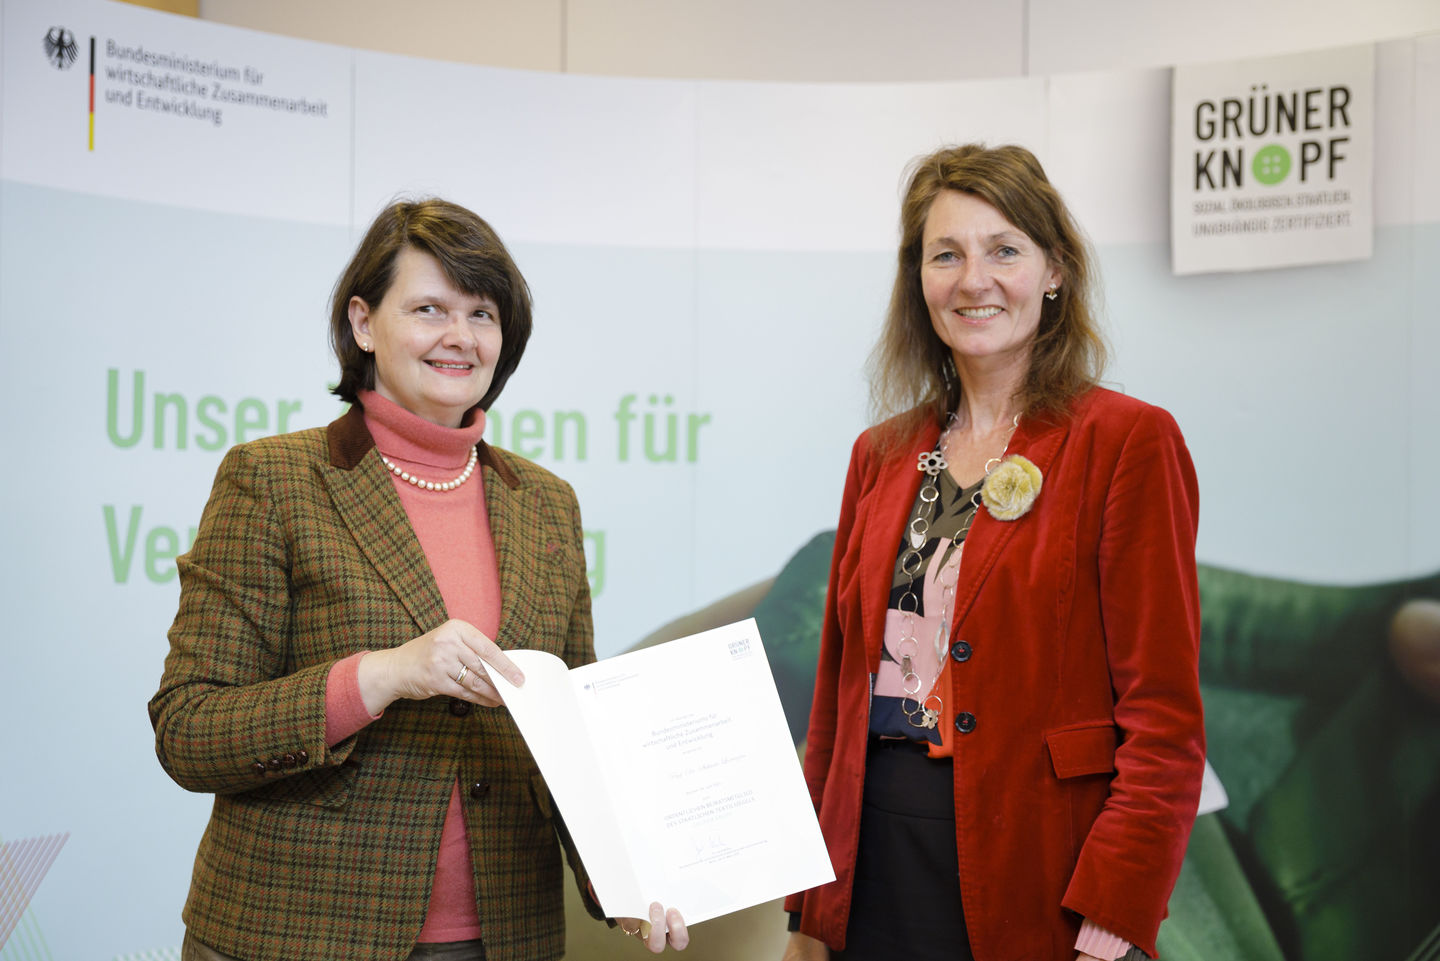 Dr. Maria Flachsbarth vom Bundesentwicklungsministerium überreicht Prof. Dr. Stefanie Lorenzen von der HWR Berlin (rechts im Bild) die Ernennungsurkunde als Mitglied des Expert/innenbeirats des Textilsiegels „Grüner Knopf“.